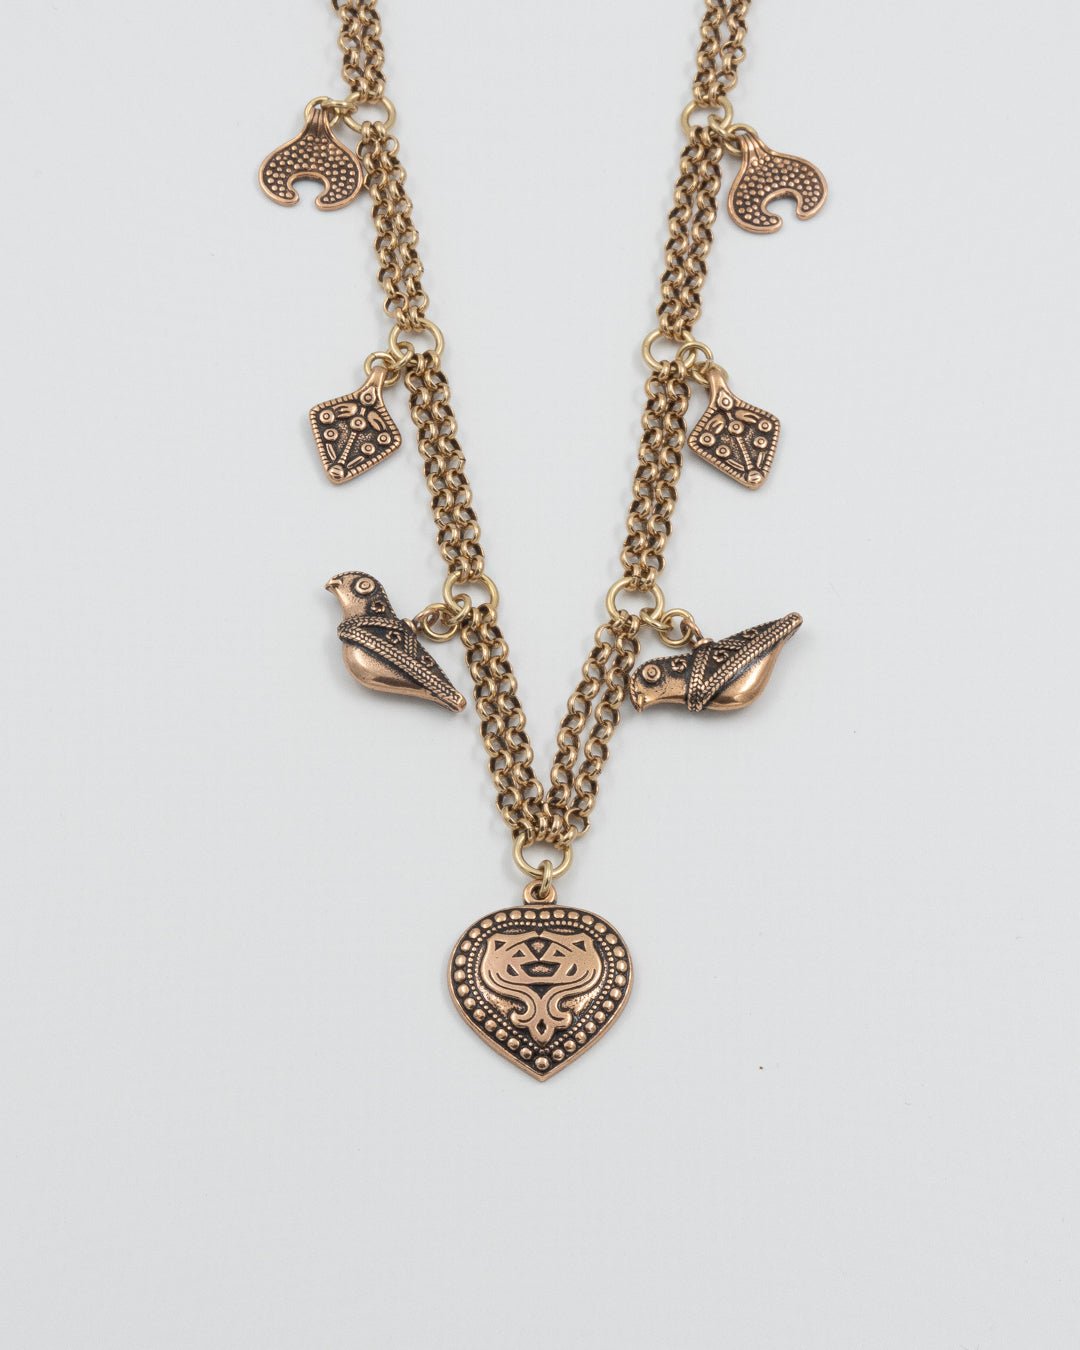 Kept Aarrekääty necklace 70 cm bronze